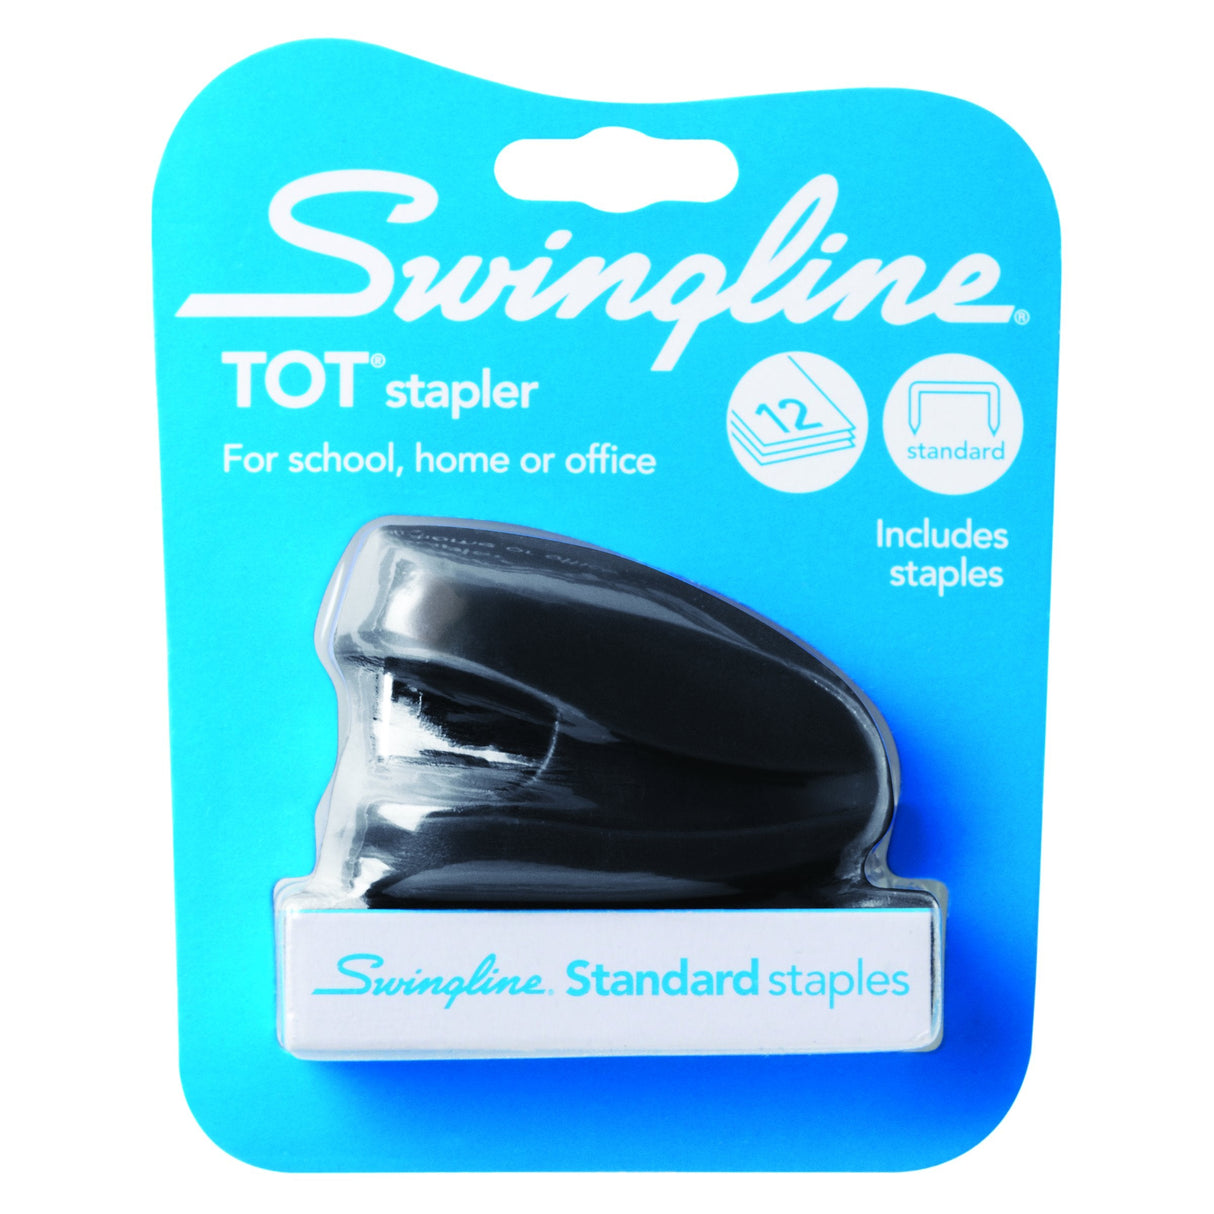 Swingline Tot Stapler, Built-in Staple Remover, 12 Sheets, Black